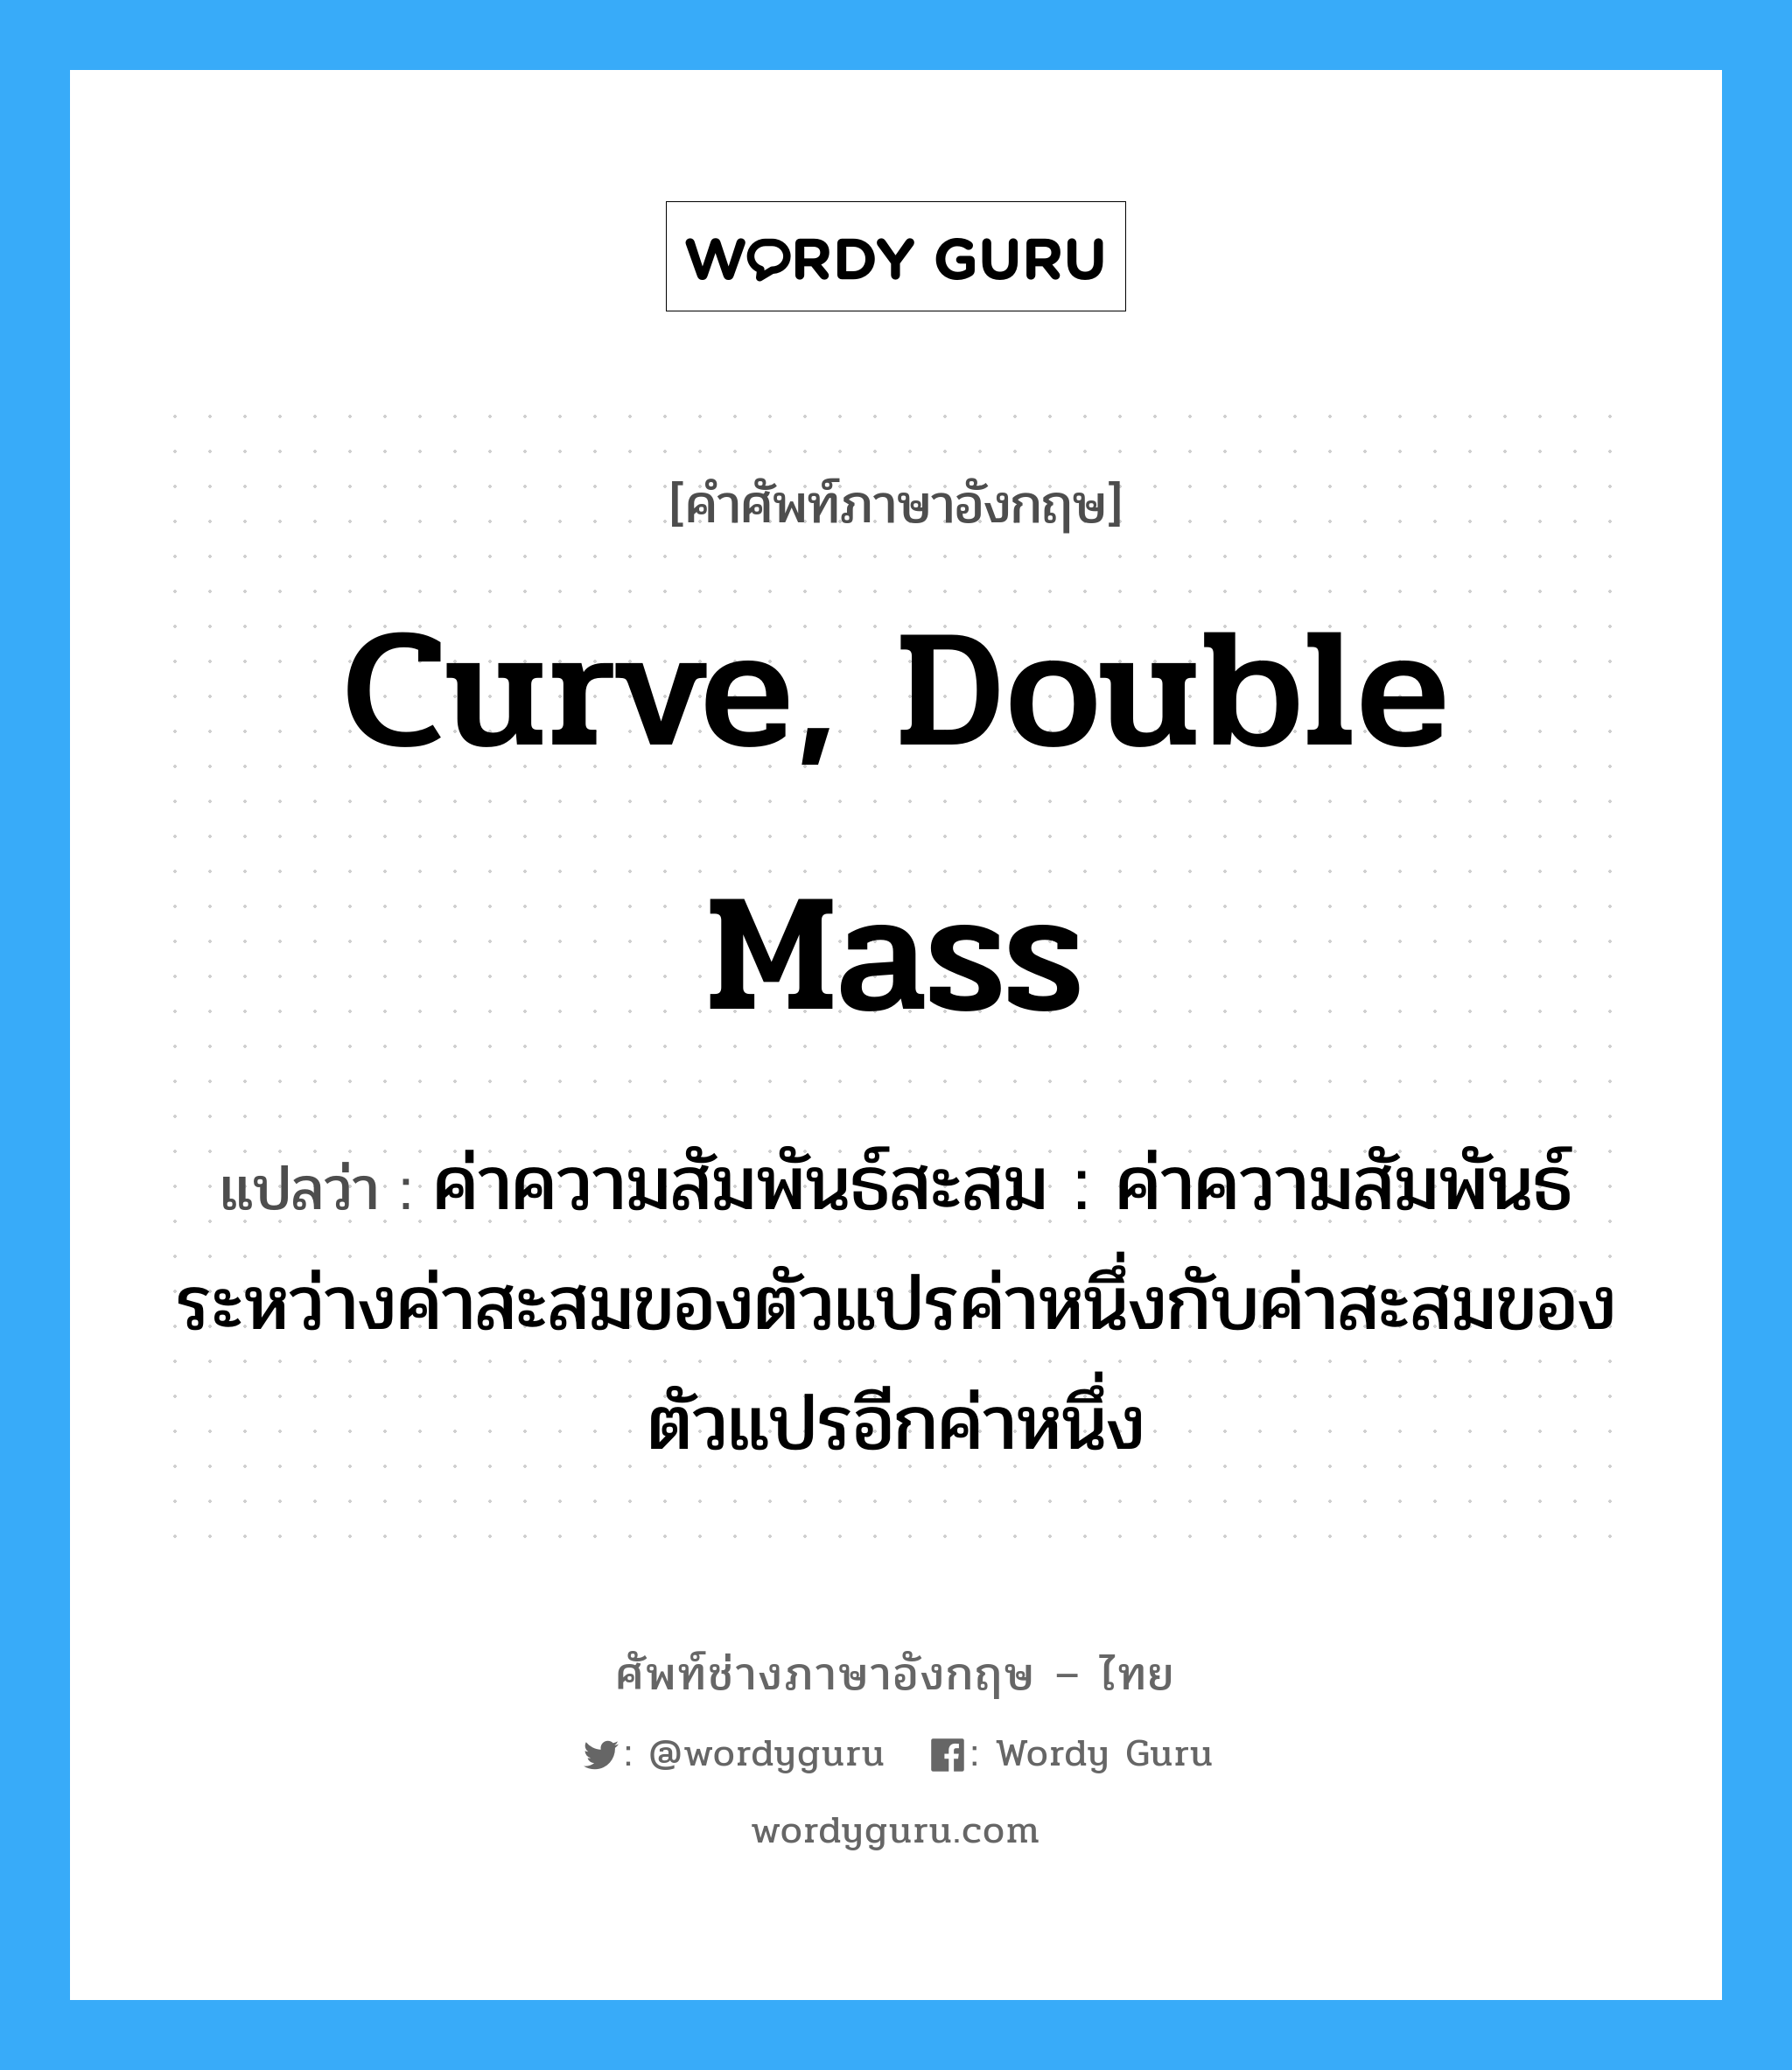 curve, double mass แปลว่า?, คำศัพท์ช่างภาษาอังกฤษ - ไทย curve, double mass คำศัพท์ภาษาอังกฤษ curve, double mass แปลว่า ค่าความสัมพันธ์สะสม : ค่าความสัมพันธ์ระหว่างค่าสะสมของตัวแปรค่าหนึ่งกับค่าสะสมของตัวแปรอีกค่าหนึ่ง